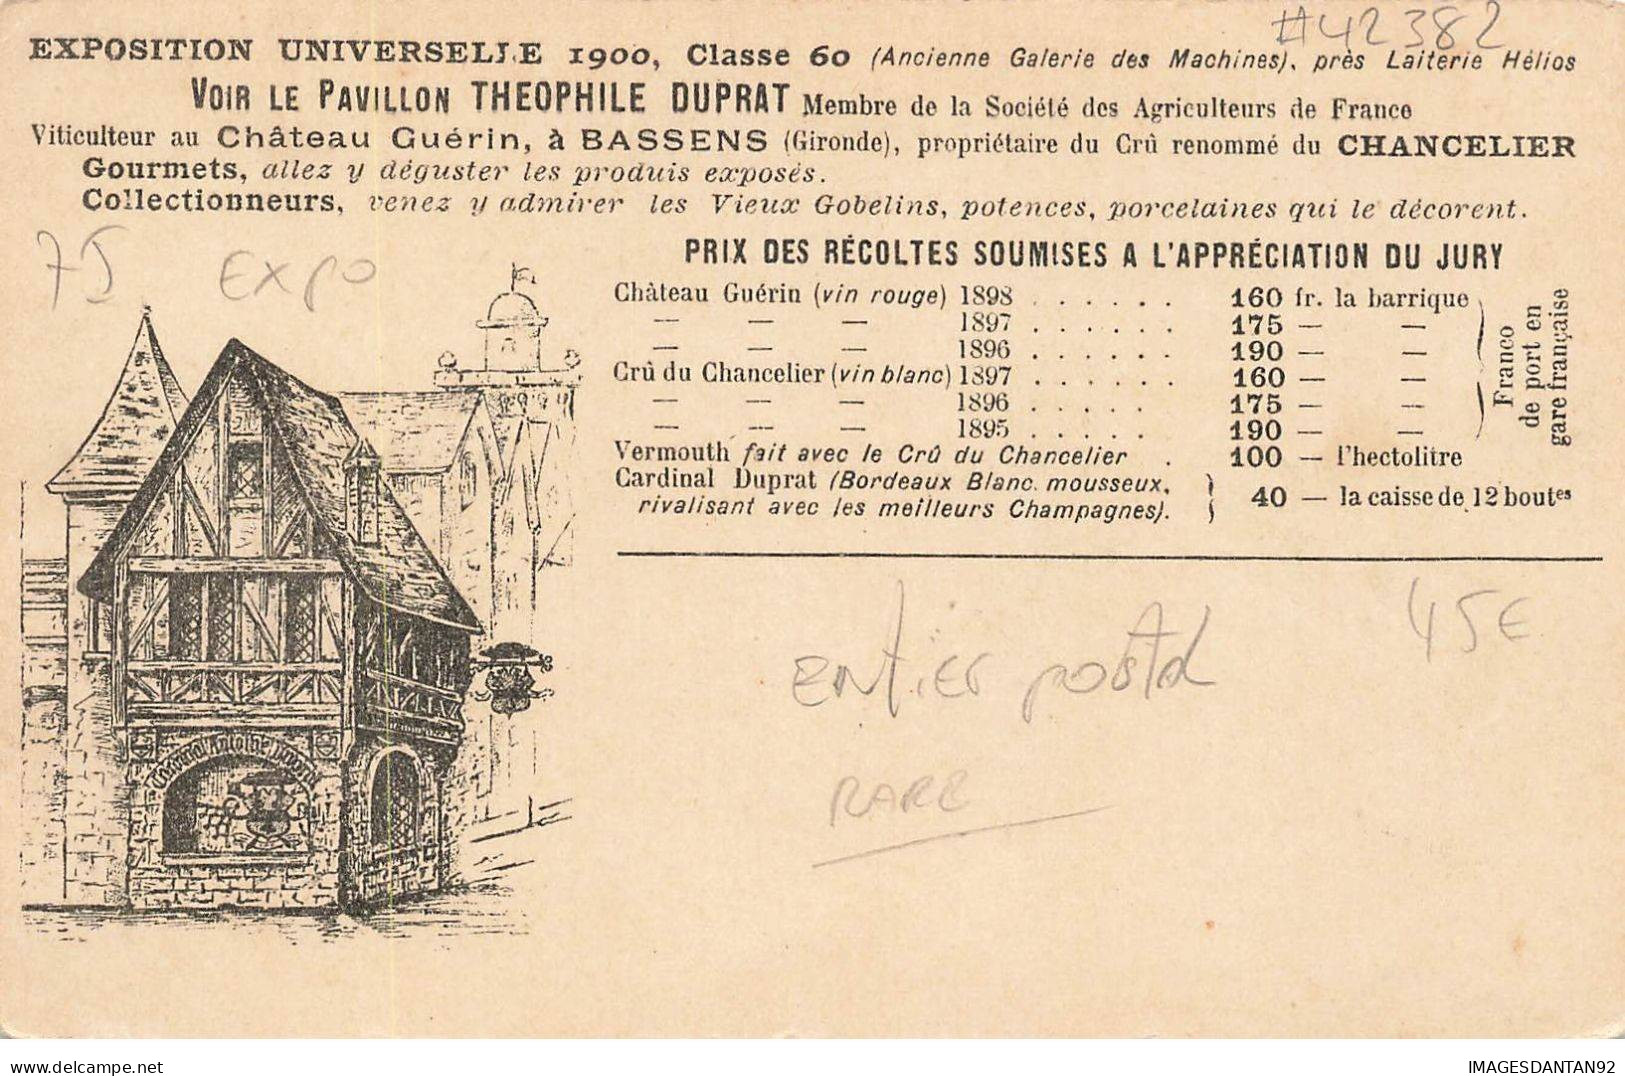 75 PARIS #FG42382 EXPOSITION UNIVERSELLE 1900 ENTIER POSTAL CARDINAL ANTHOISNE DUPRAT VITICULTEUR BASSENS - Exhibitions